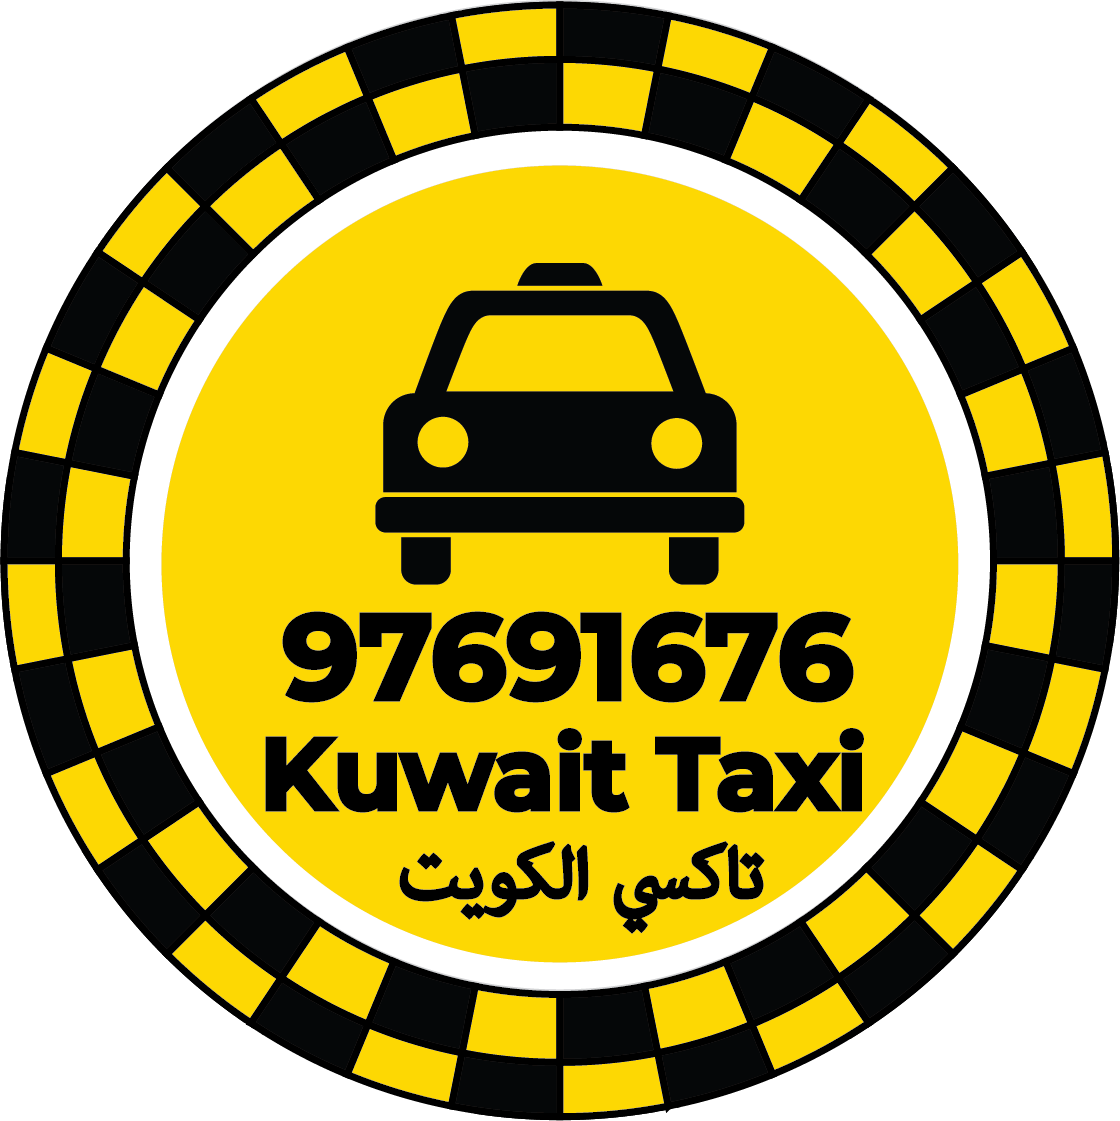 تاكسي في الخيران الكويت - رقم تاكسي في الخيران